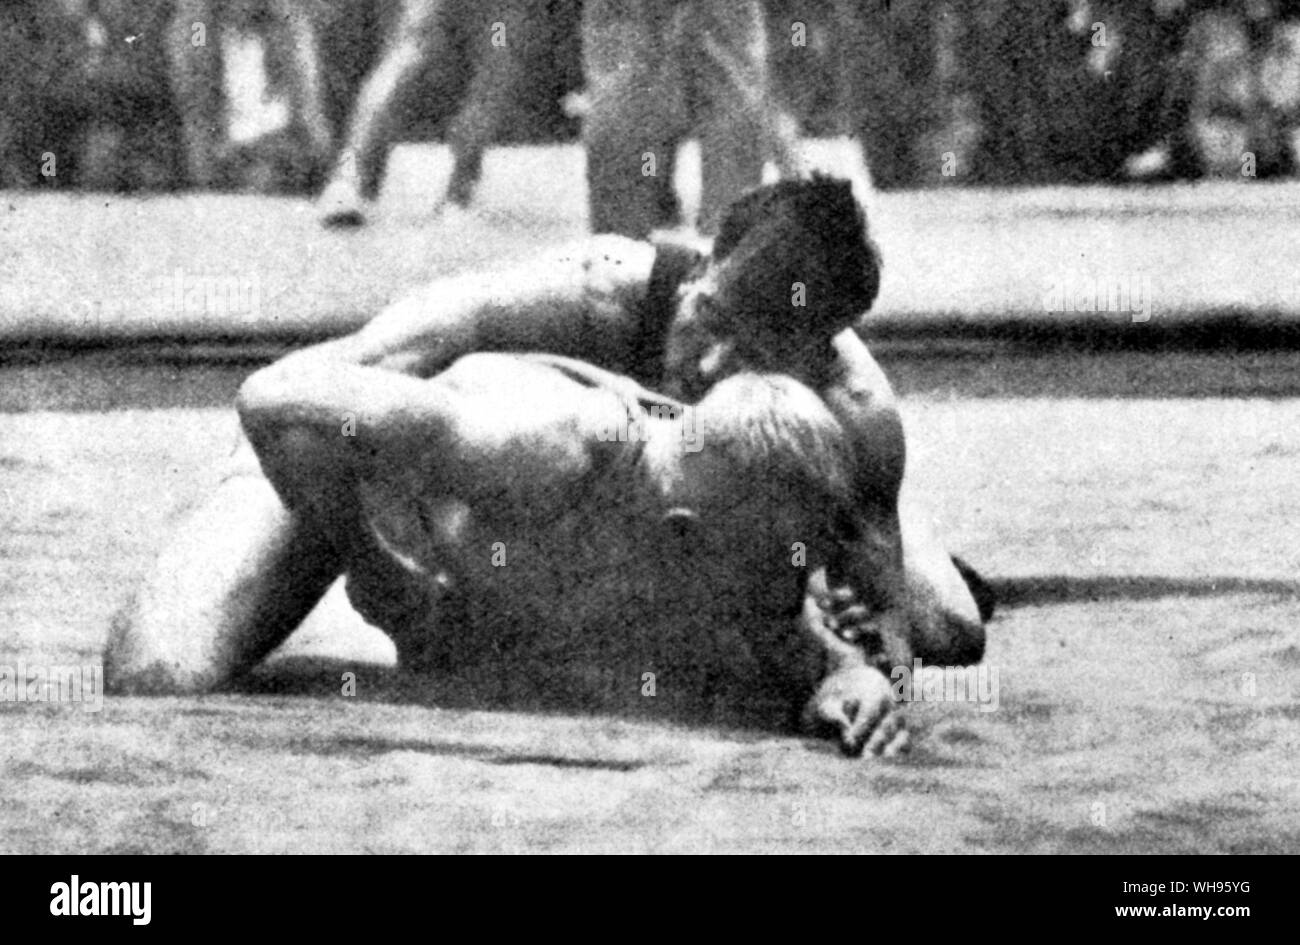 Lutte gréco-romaine un poids Bantam Ahlfors (Finlande) P Mollin (Belgique) 1928 Jeux Olympiques d'Amsterdam. Banque D'Images